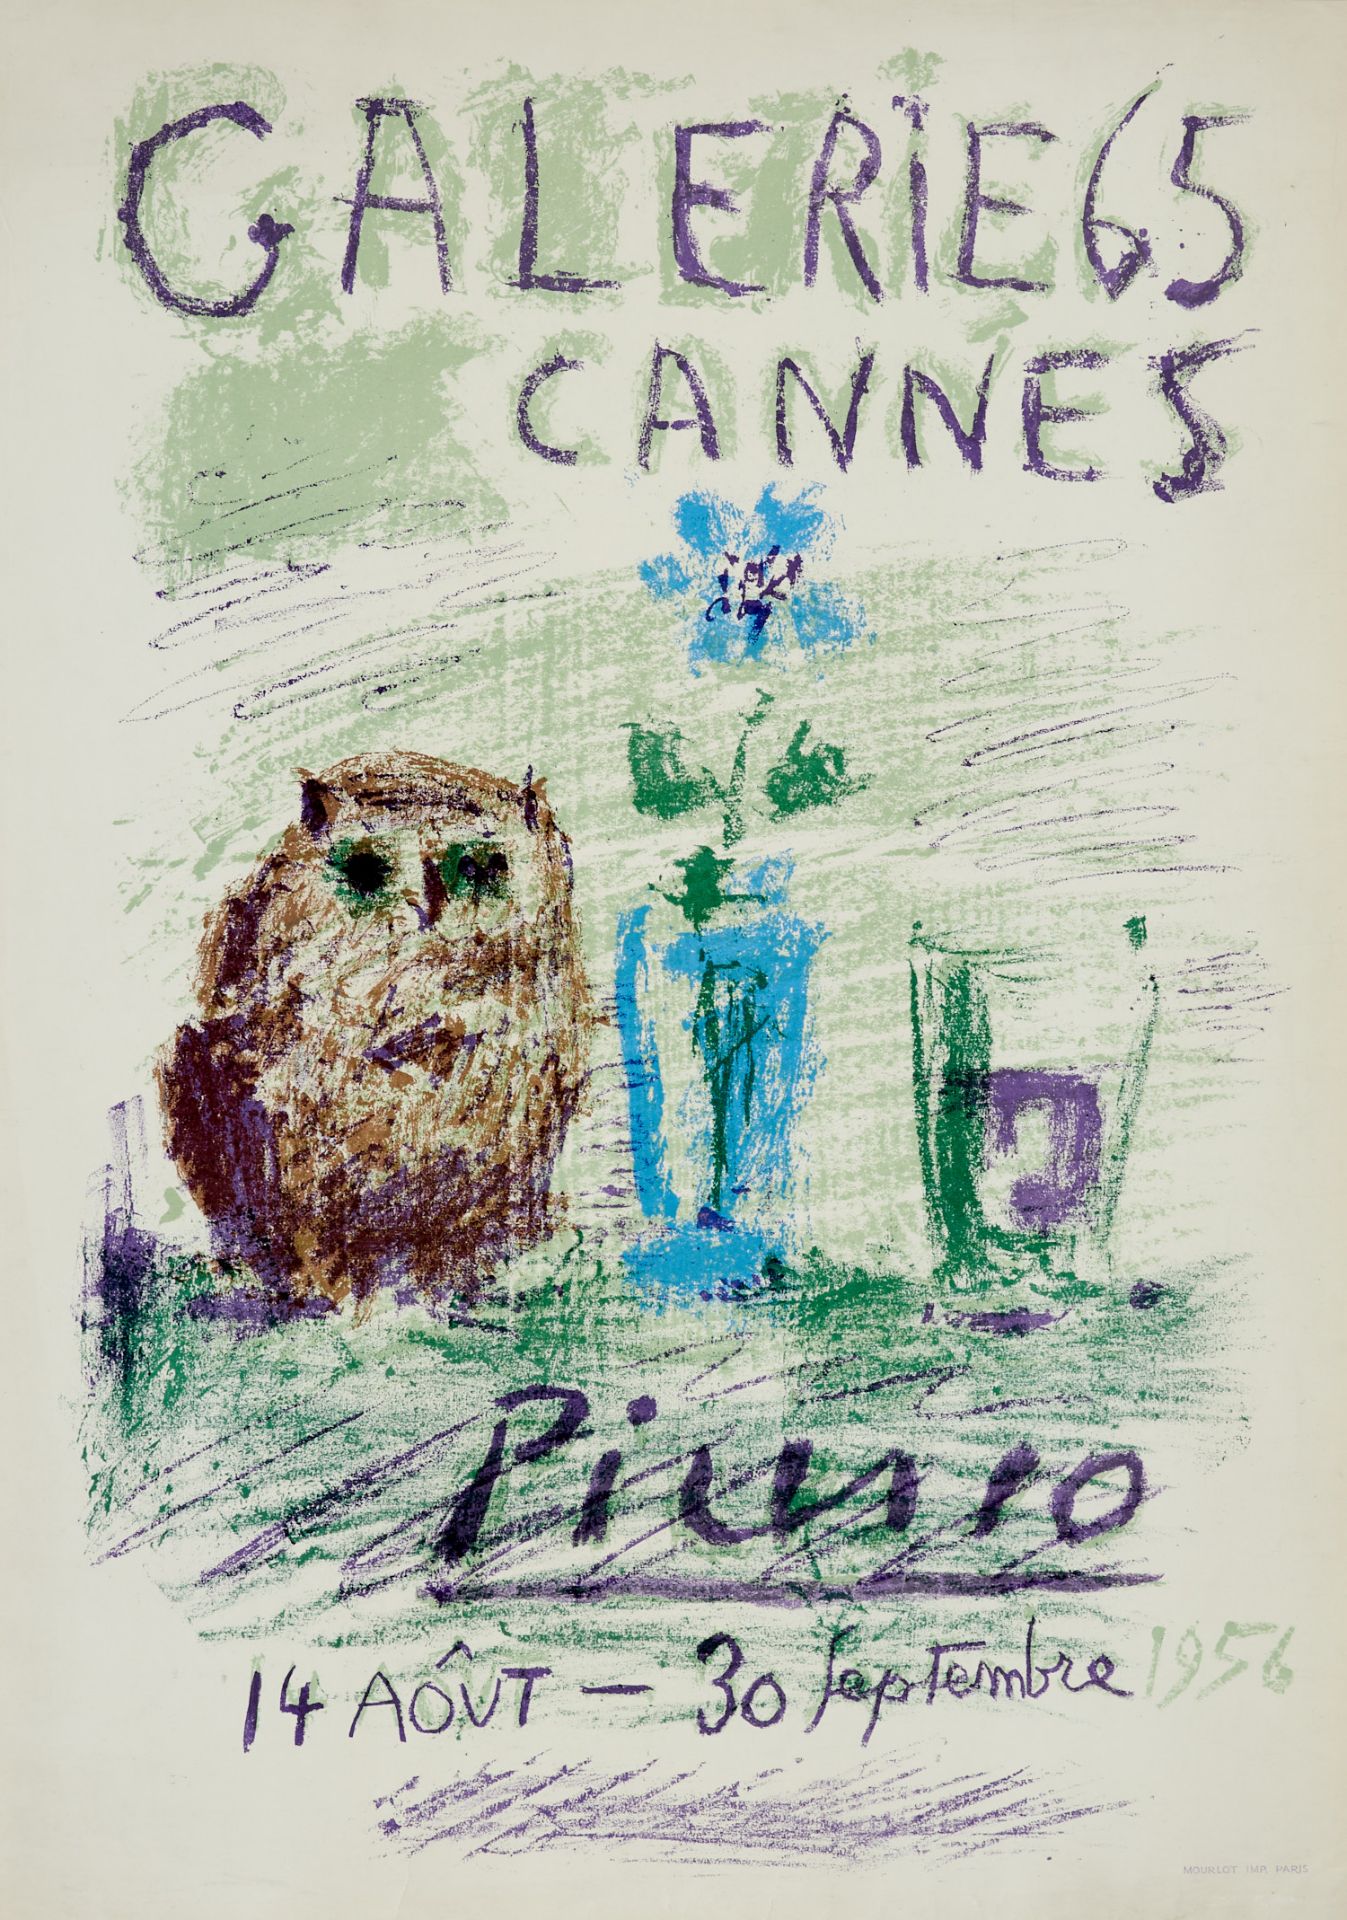 Plakate Picasso, P., "Galerie 65 Cannes. Picasso 14 Aoľt - 30 Septembre 1956." (Hibou, Verre et